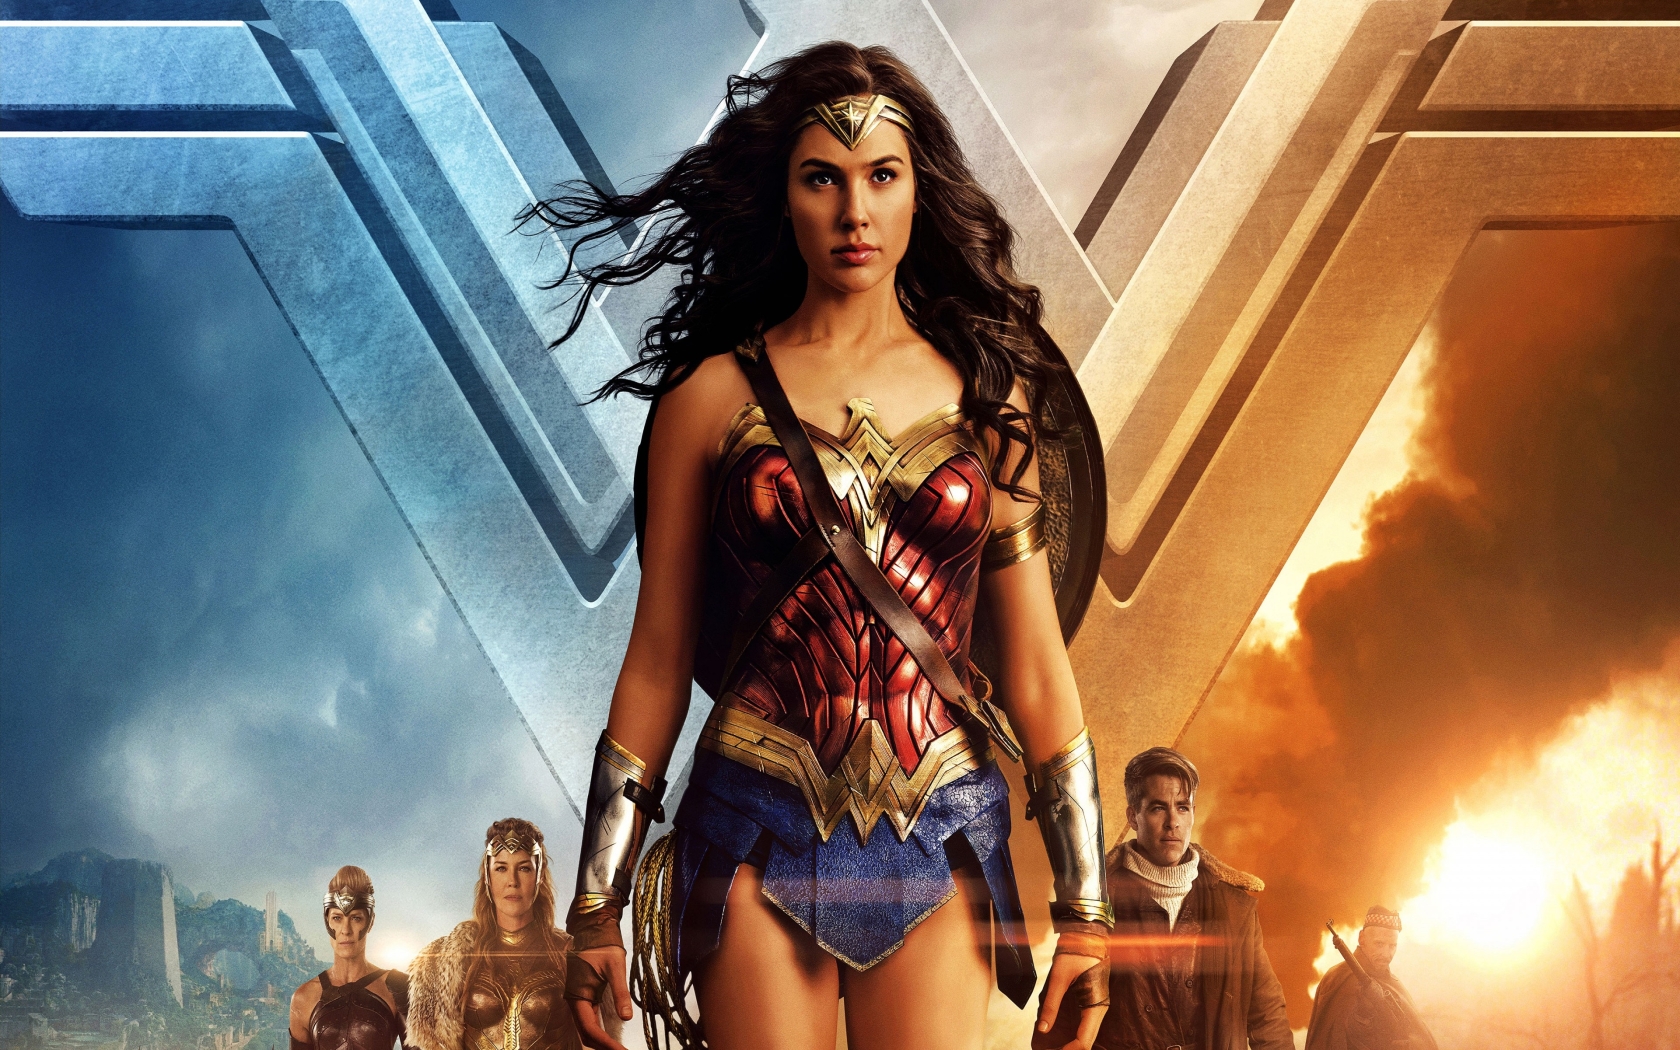 Wonder Woman Gal Gadot 2017 for 1680 x 1050 widescreen resolution